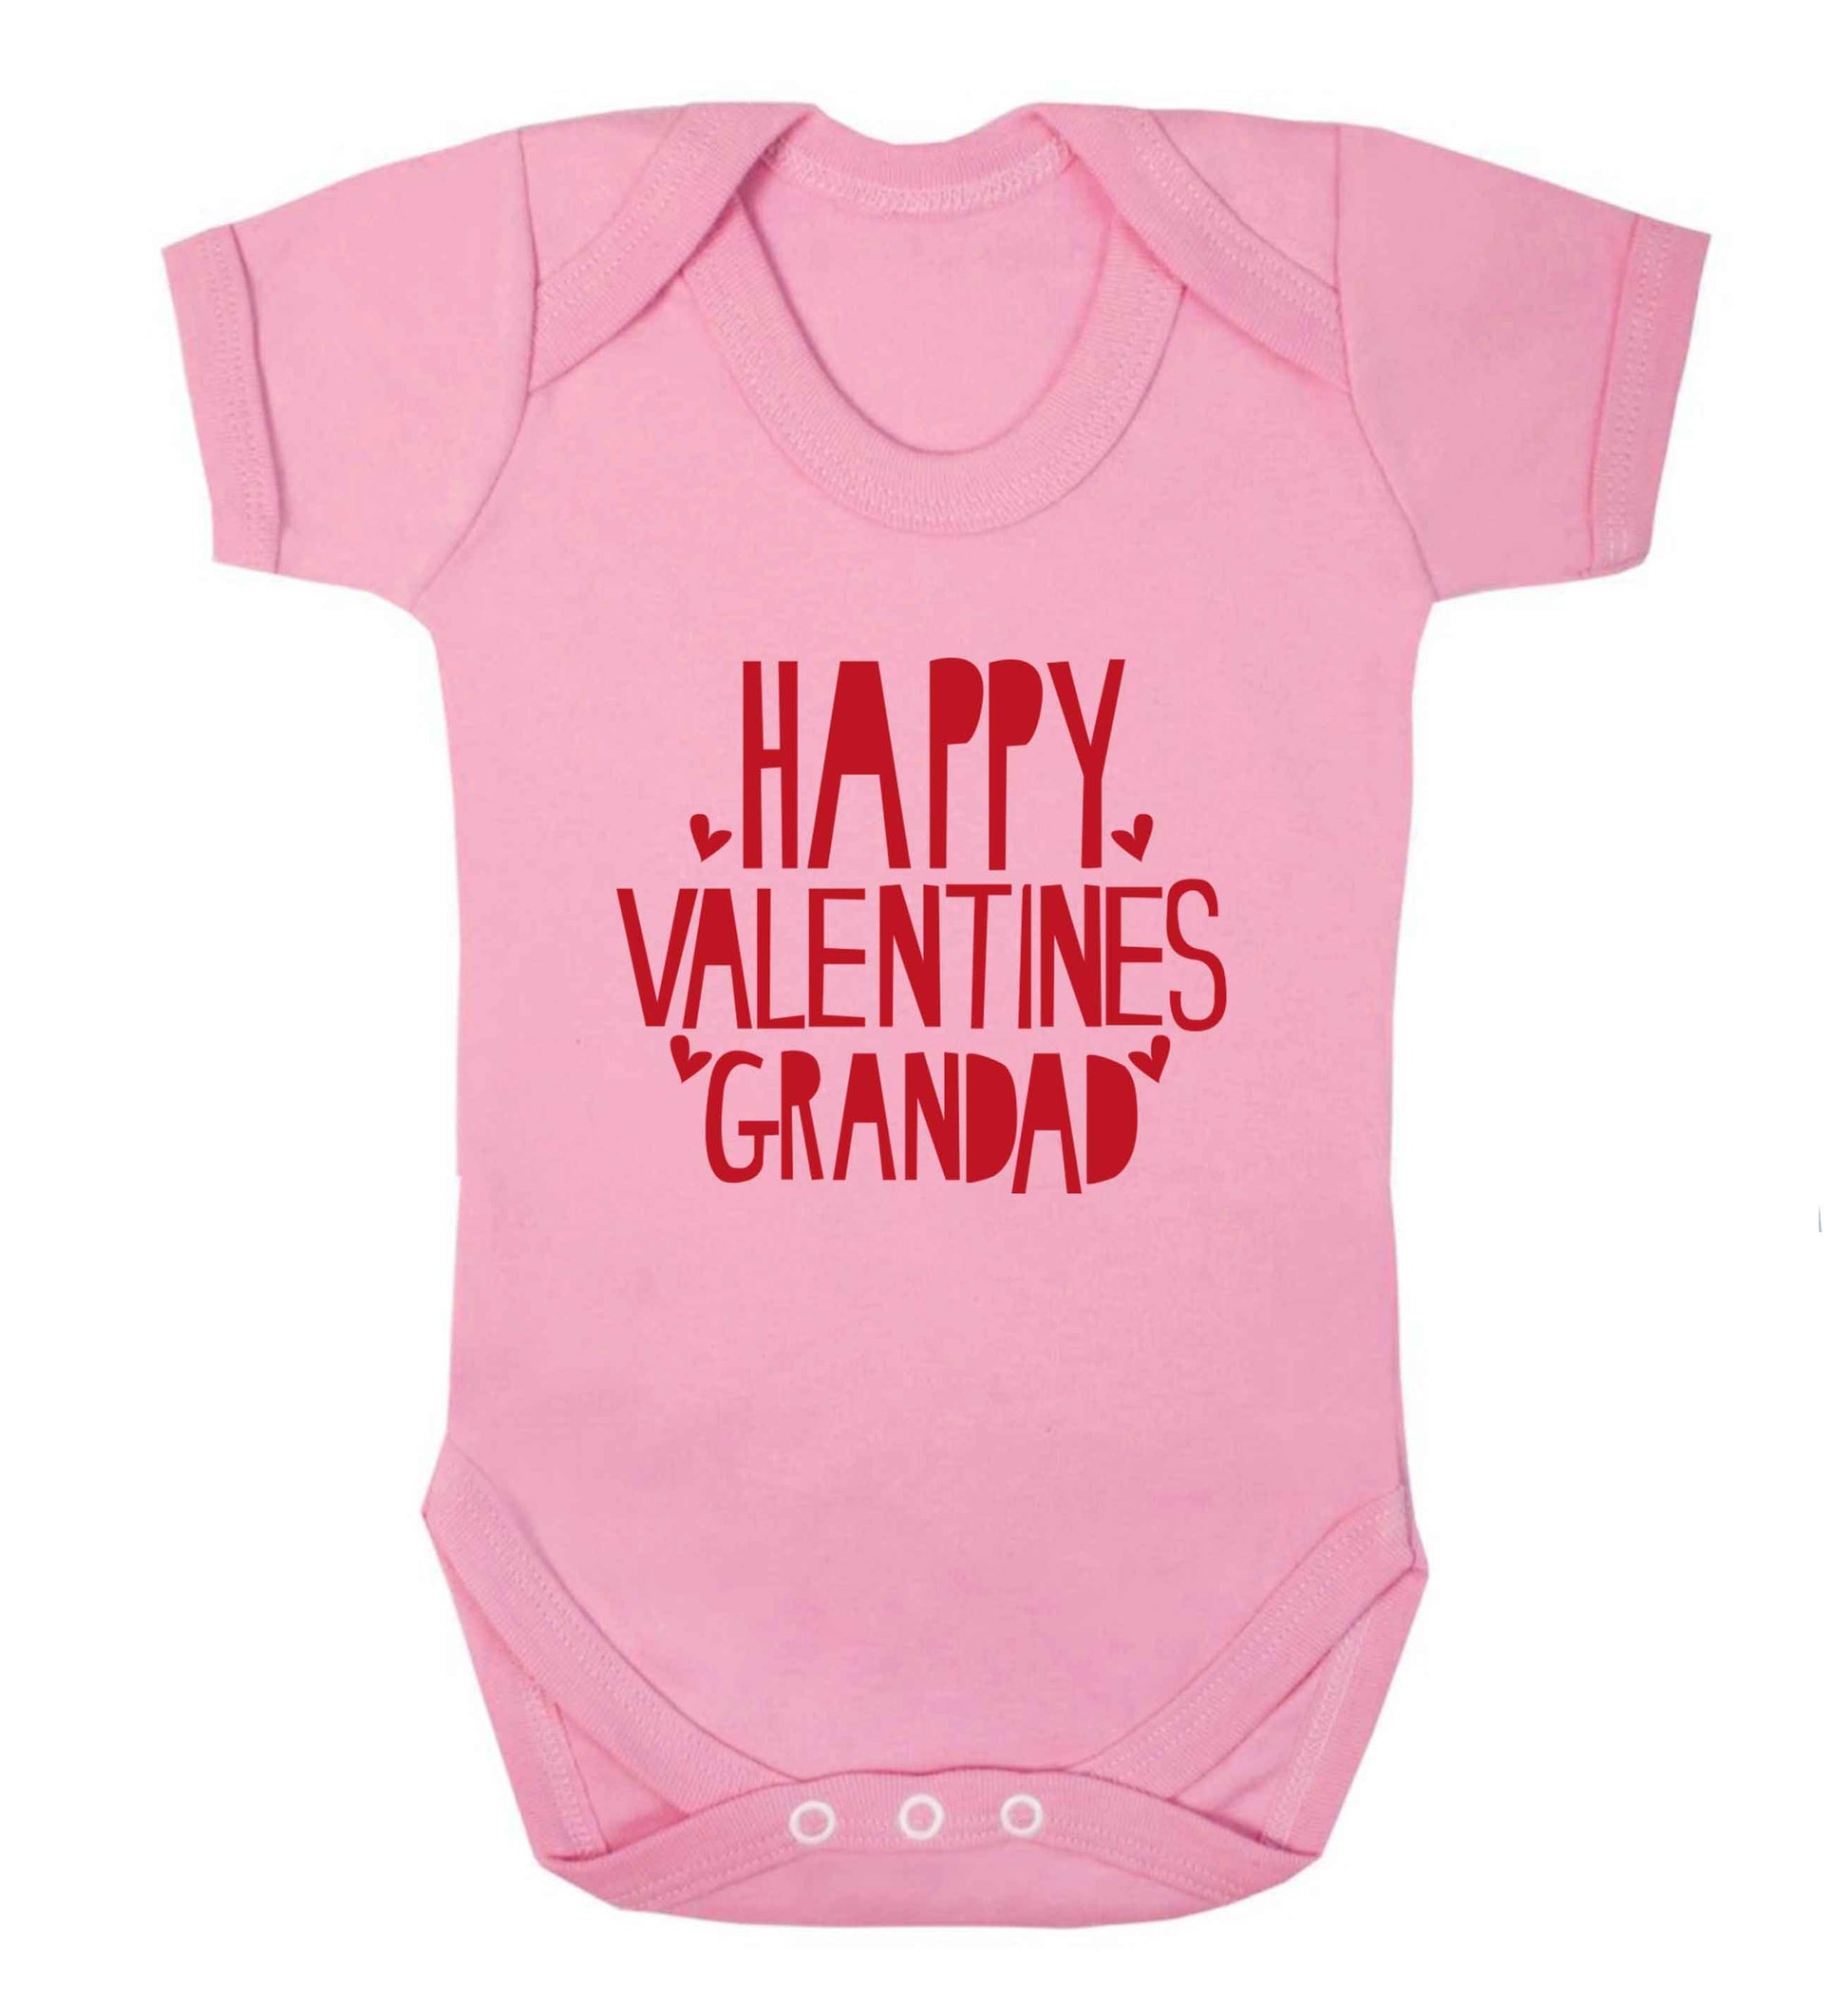 Happy valentines grandad baby vest pale pink 18-24 months